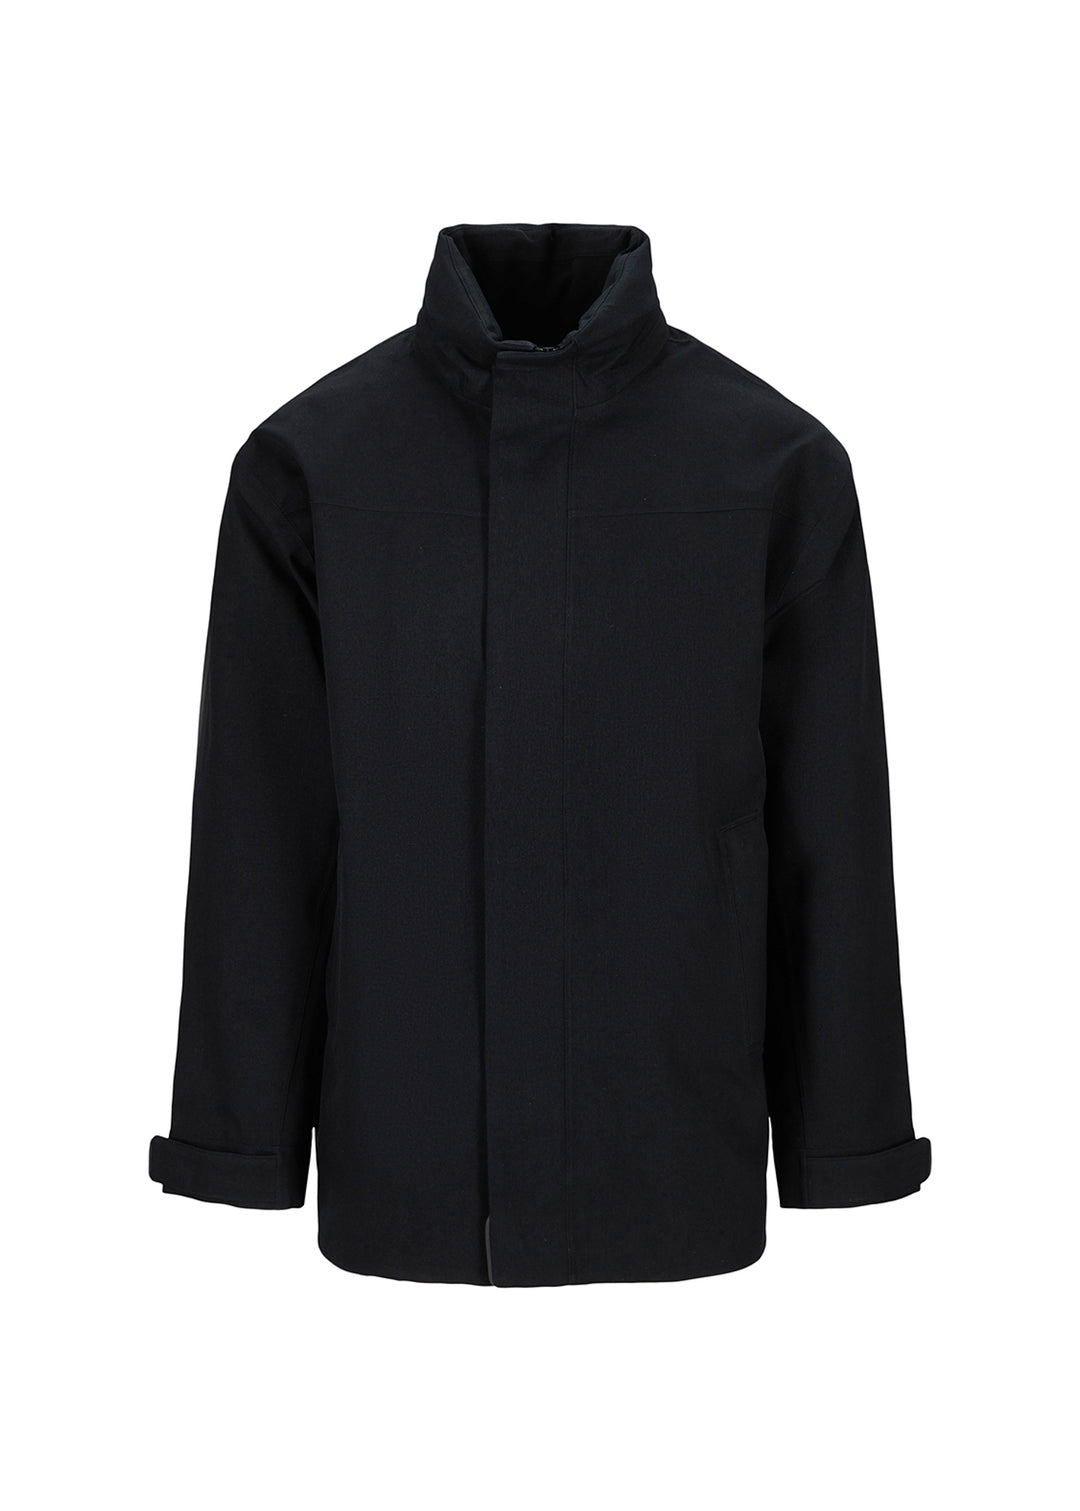 BRGN Sip Mens Jacket Coats 095 New Black